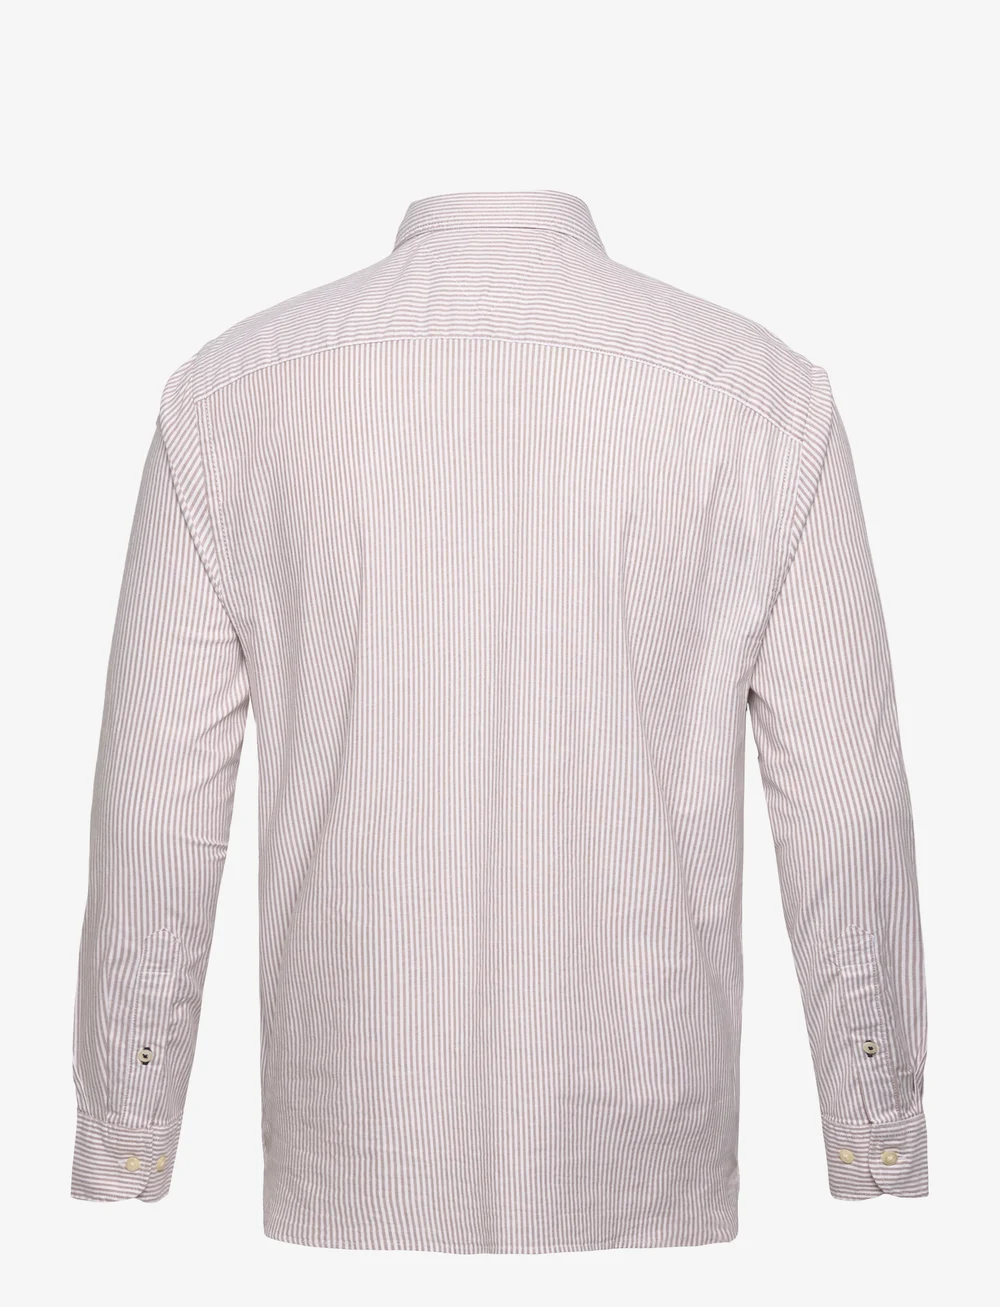 Tommy Hilfiger 1985 Flex Oxford Stripe Rf Shirt - Casual shirts